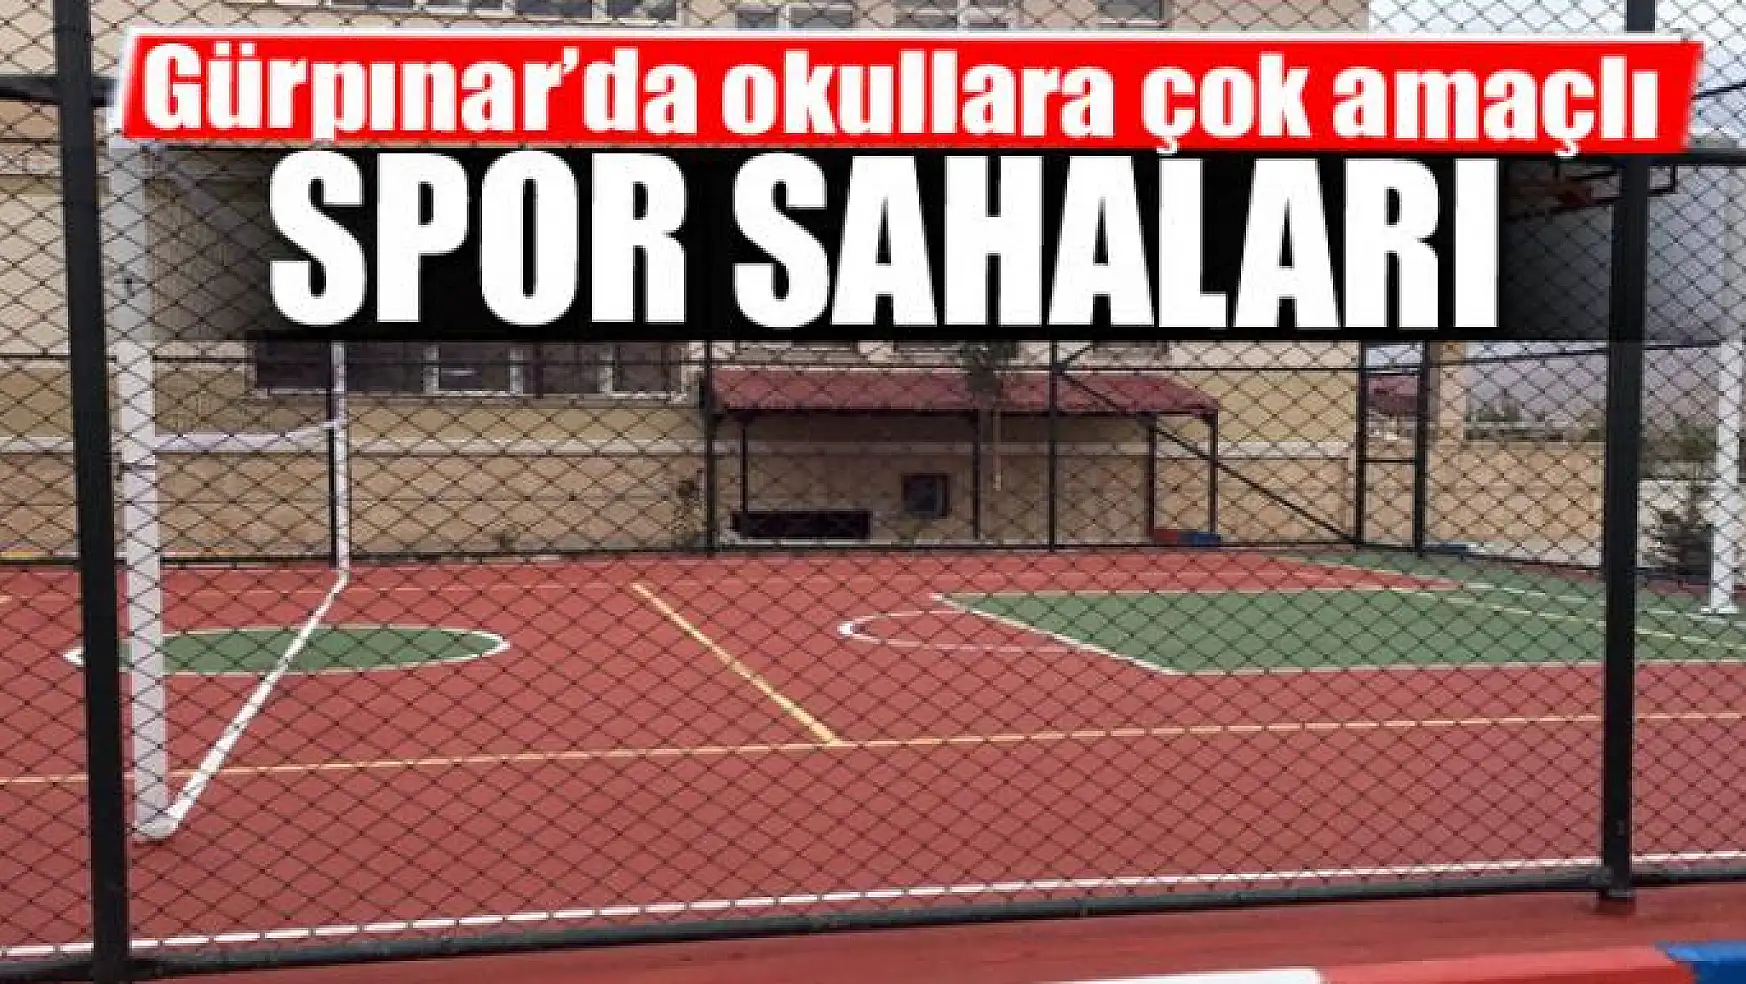 Gürpınar'da okullara çok amaçlı spor sahaları